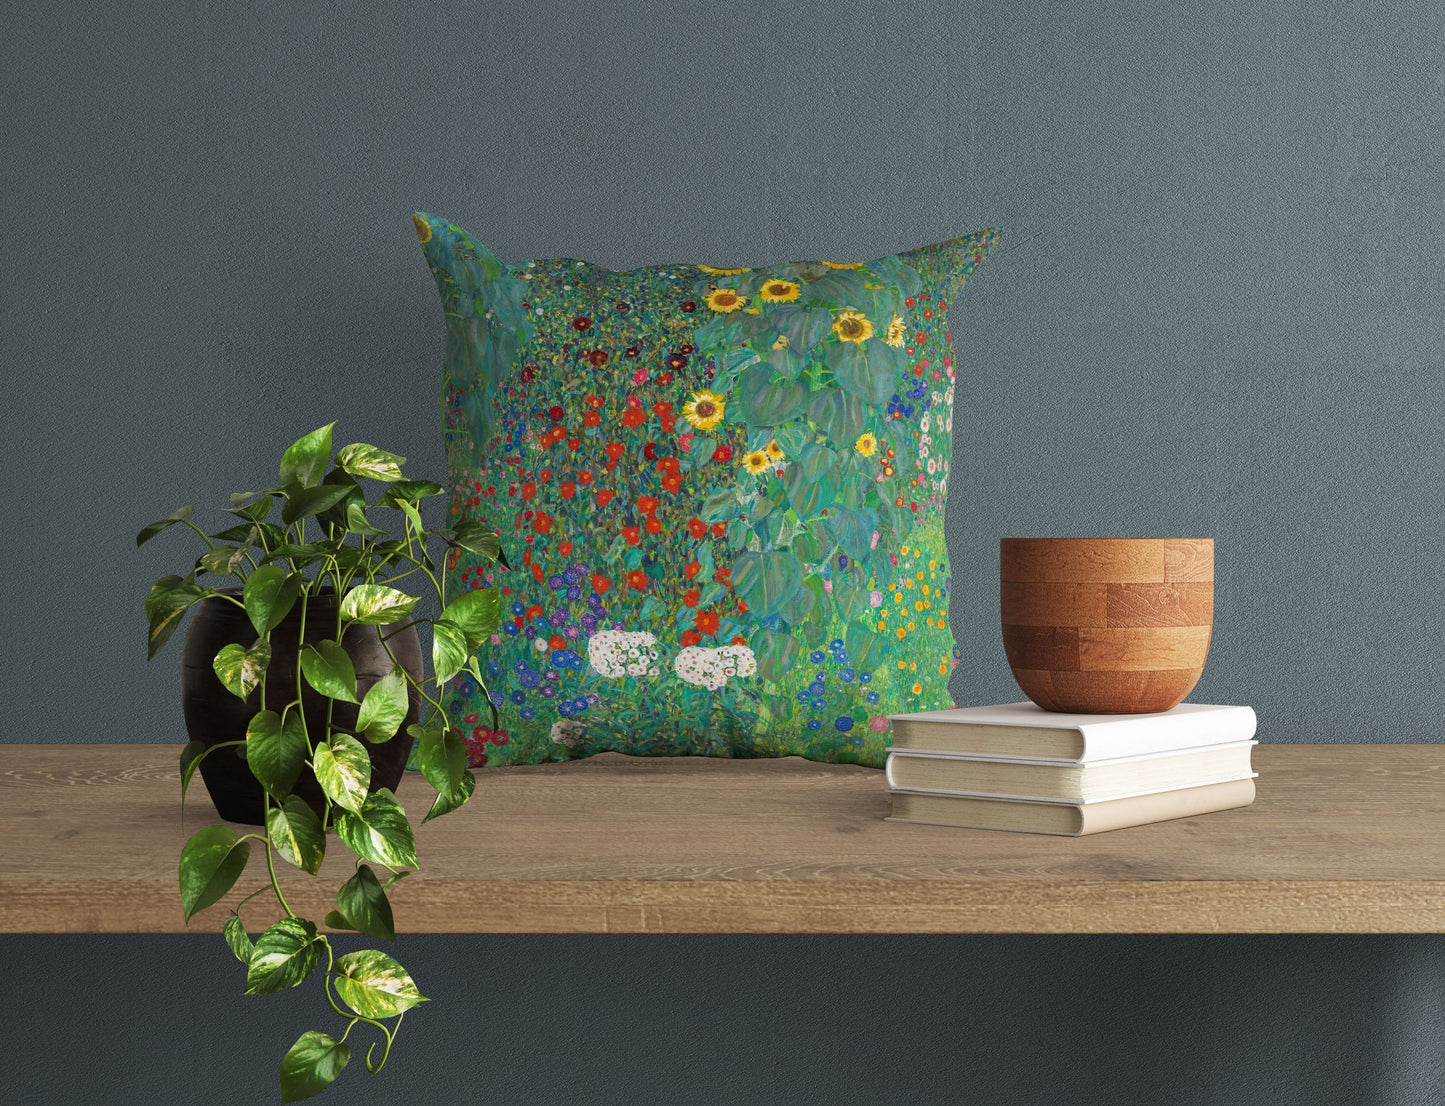 Gustav Klimt Famous Art Farm Garden With Sunflowers Throw Pillow Cover, Art Pillow, Green Pillow Cases, Art Nouveau Pillow, Square Pillow